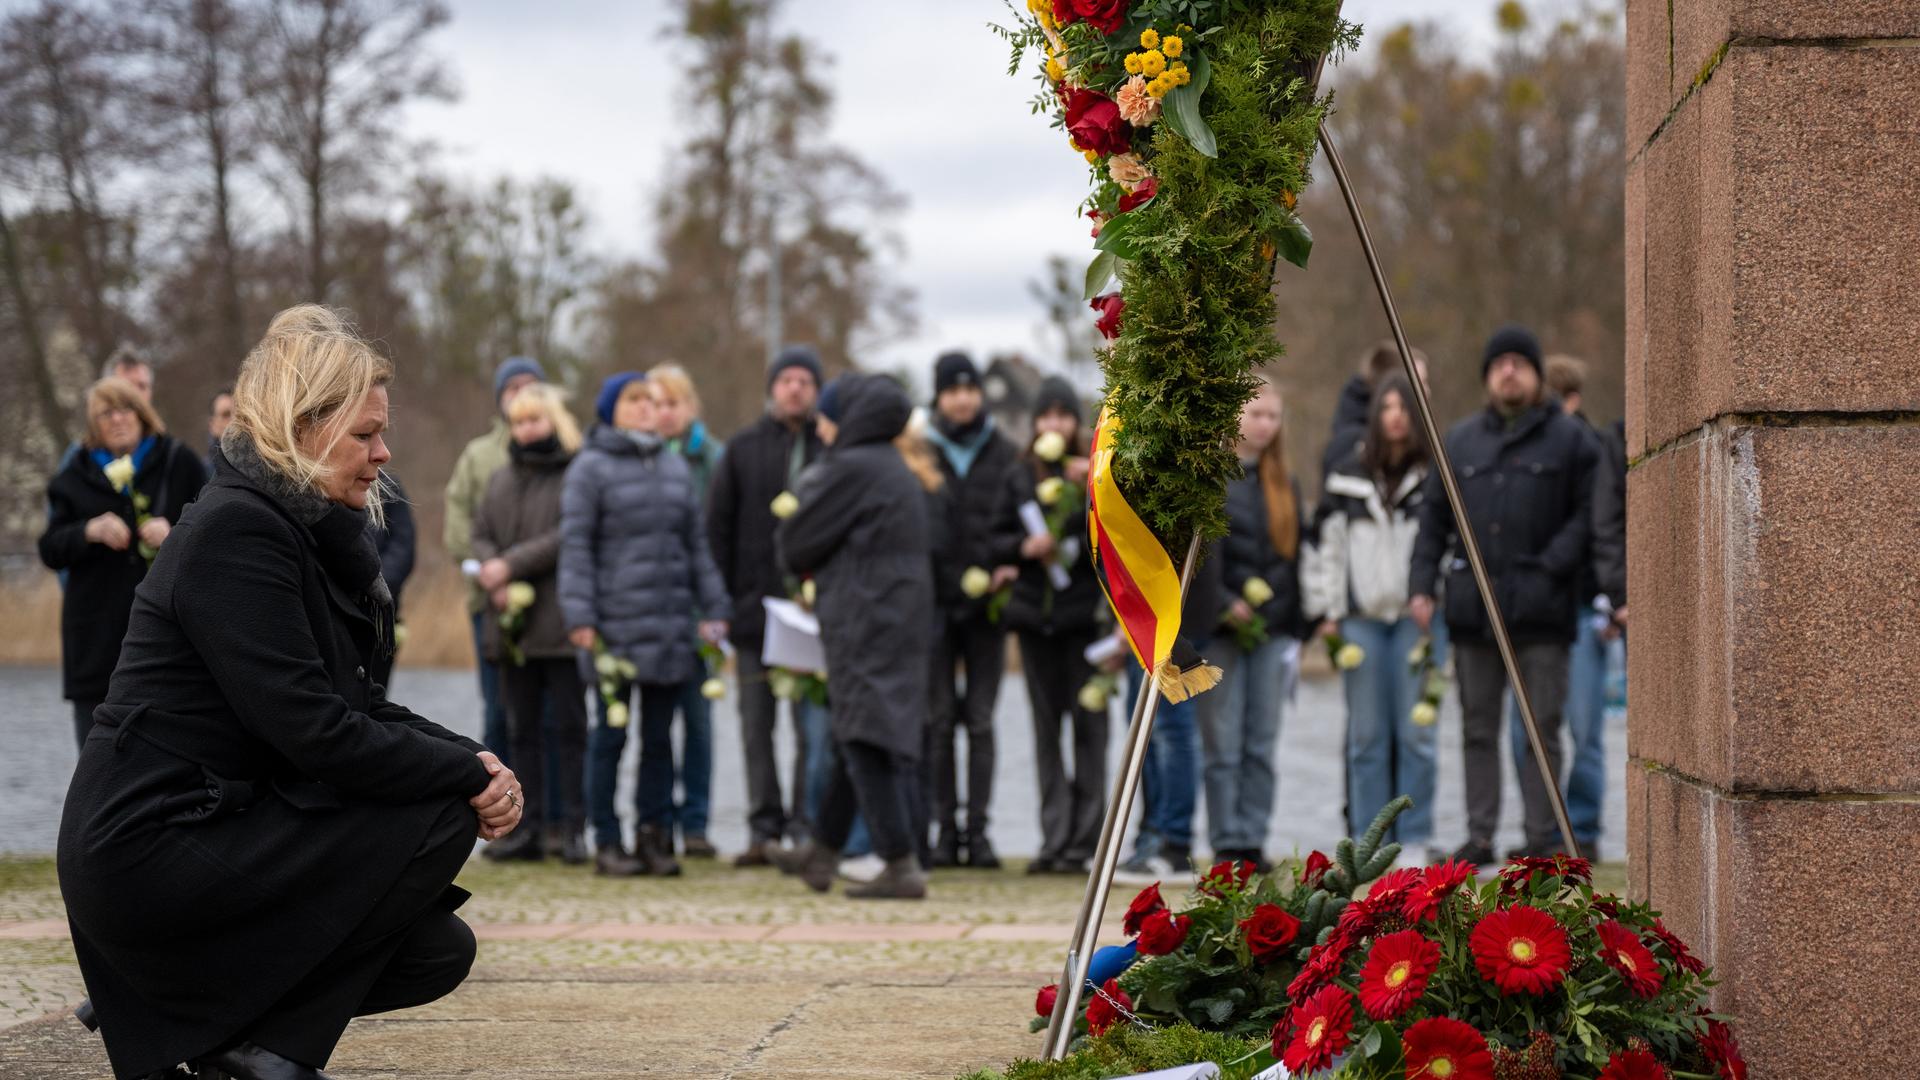 Bundesinnenministerin Nancy Fauser (SPD) kniet bei der Kranzniederlegung am Denkmal "Tragende" bei der Gedenkveranstaltung in der Mahn- und Gedenkstätte Ravensbrück